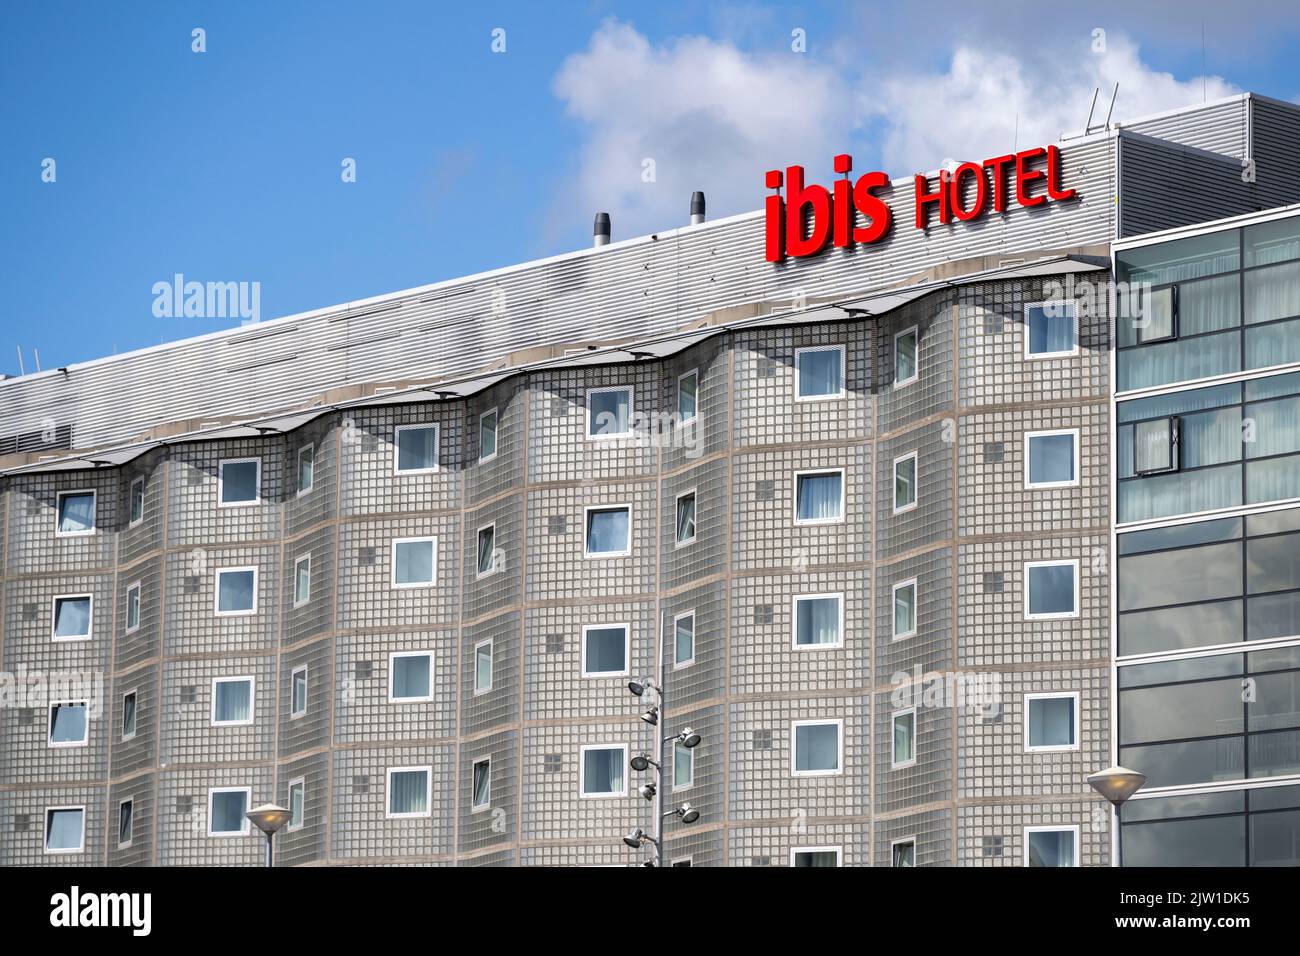 Una vista generale di un hotel Ibis ad Amsterdam, Olanda. Foto Stock